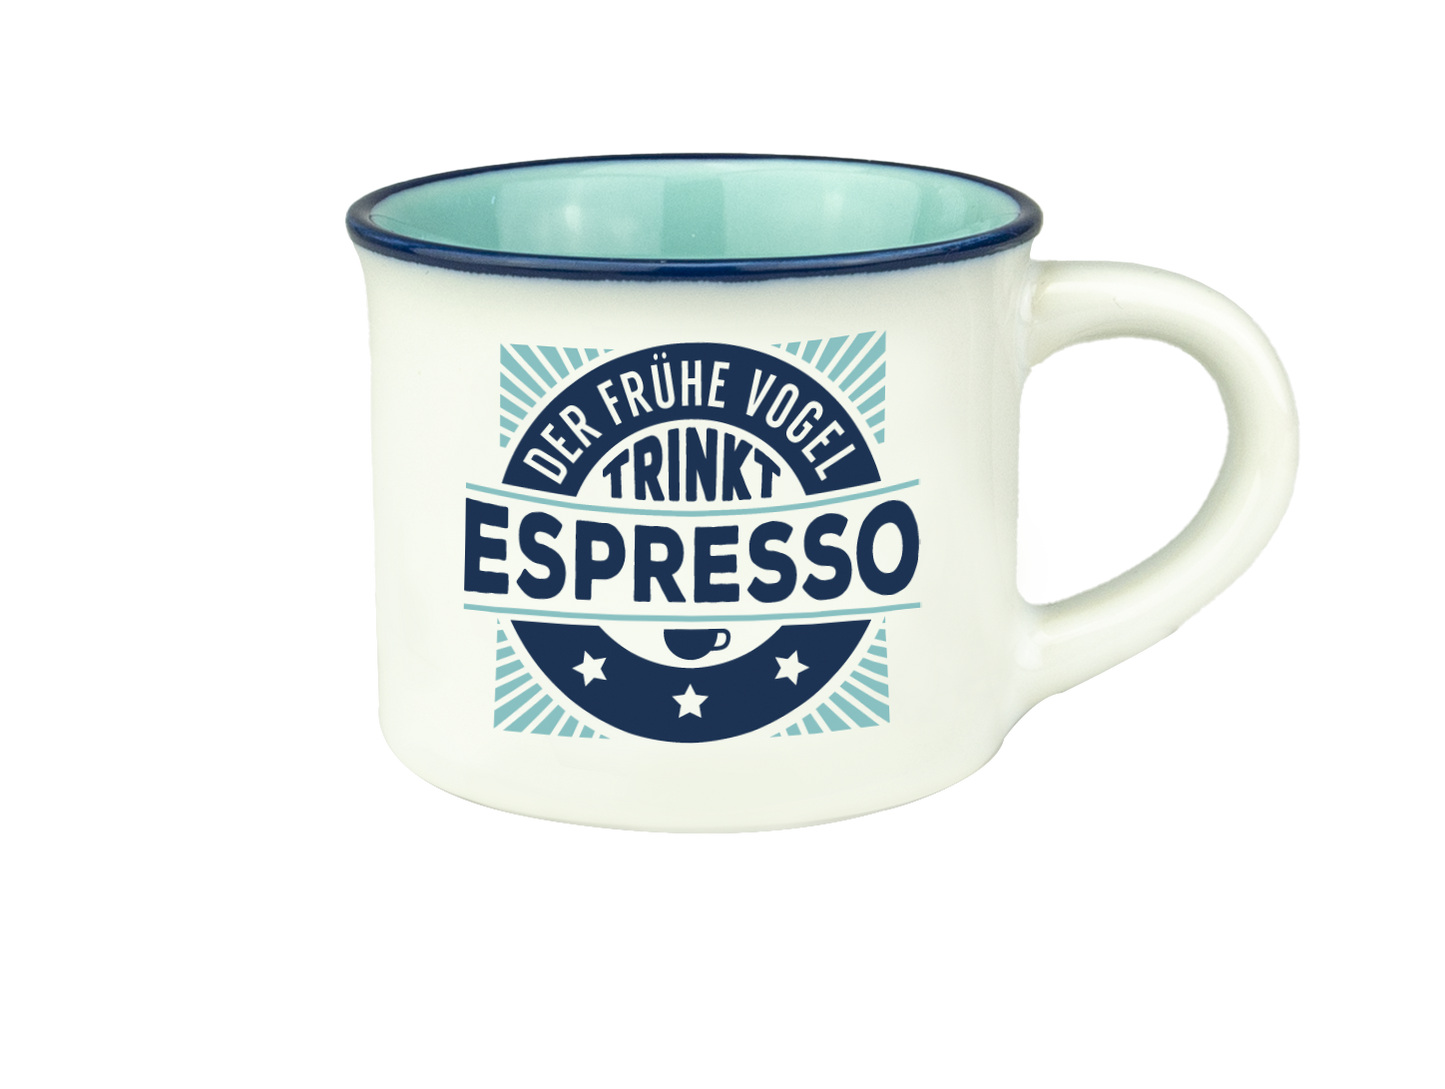 H & H Espresso-Tasse - Der frühe Vogel trinkt Espresso